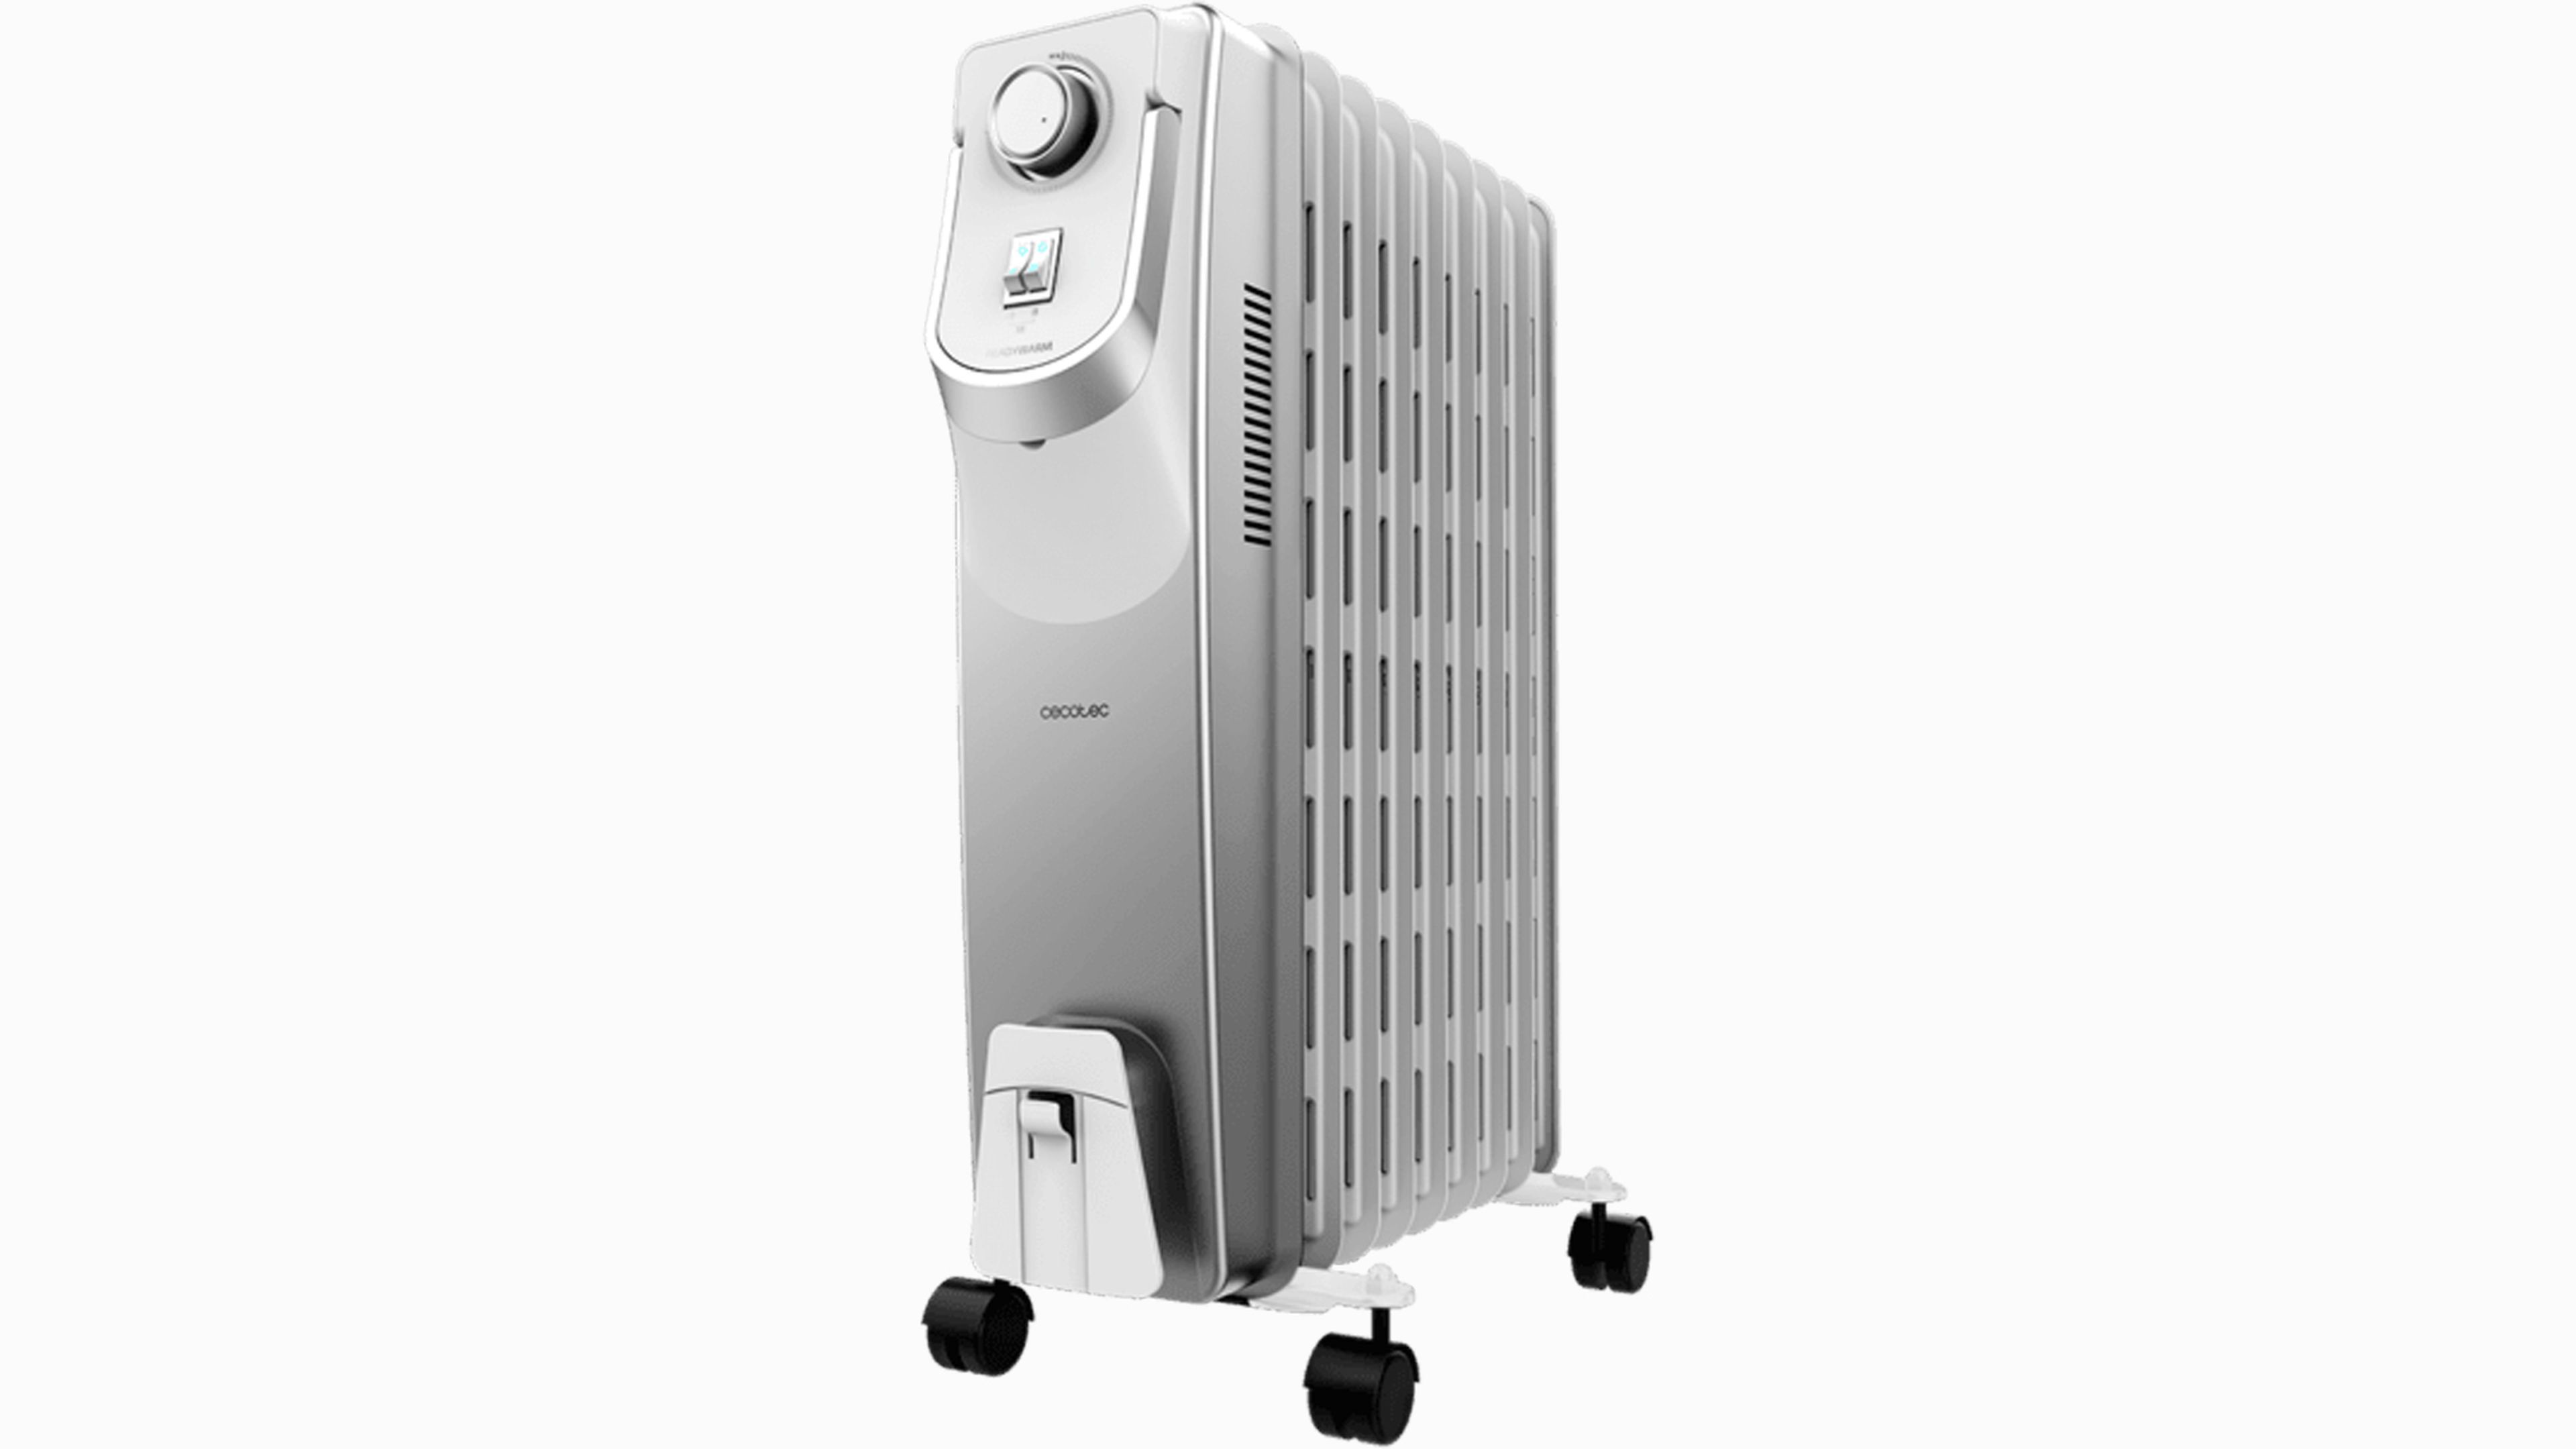 Radiador eléctrico barato y bajo consumo: OPINION de este calefactor Cecotec  de menos de 100 euros 